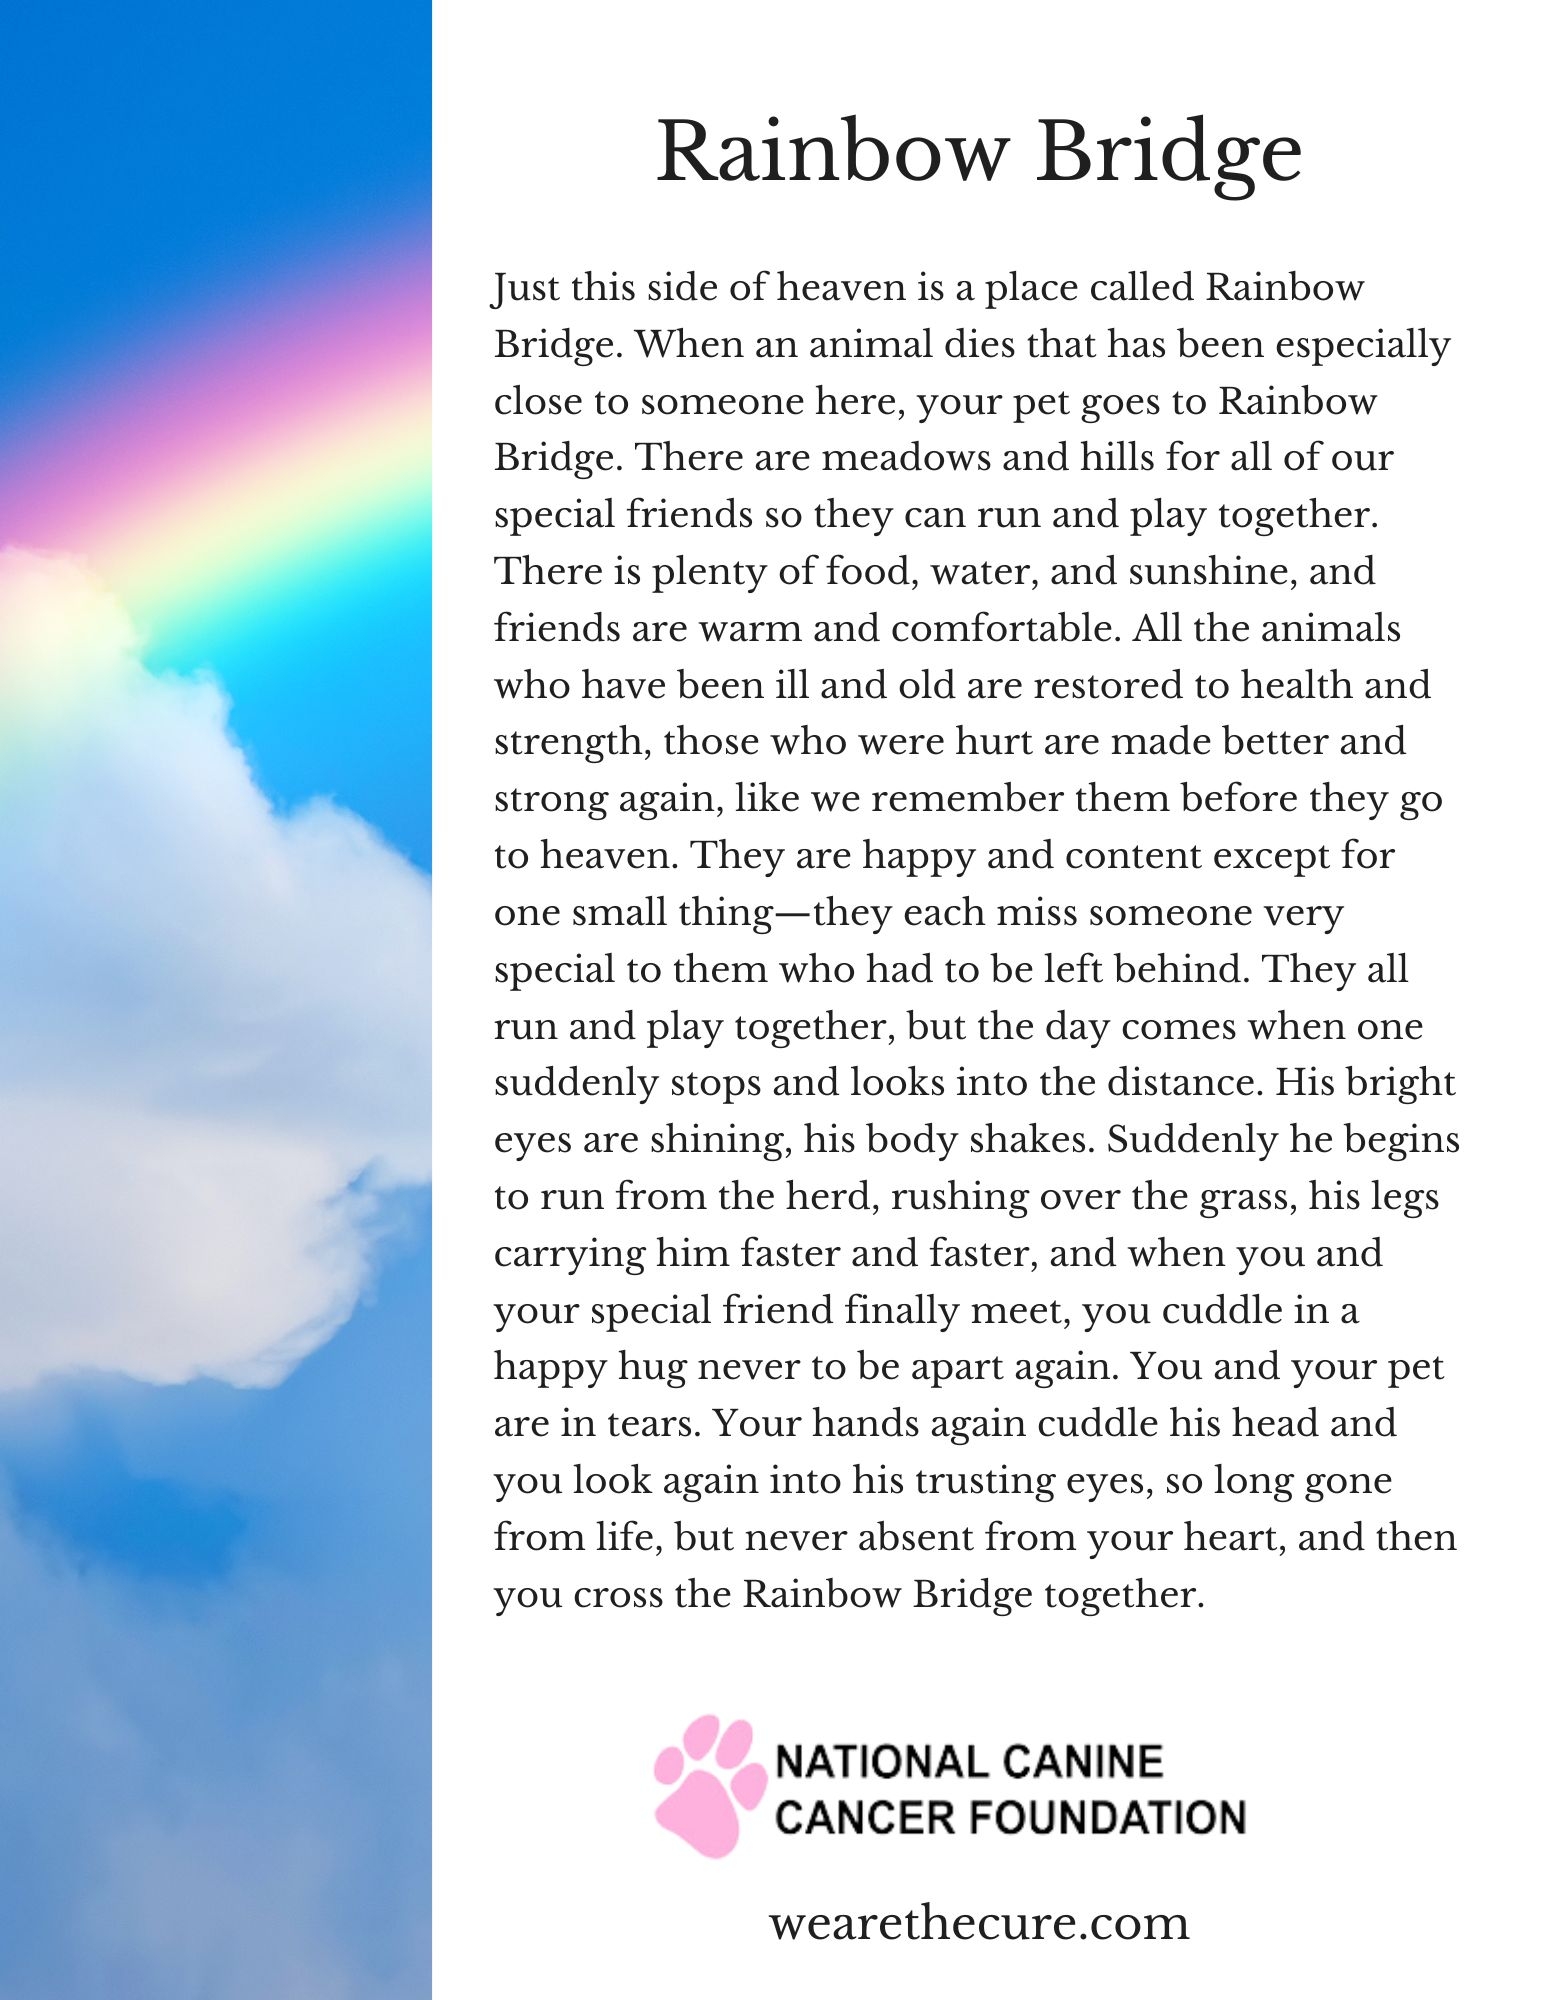 Rainbow Bridge Pet Poem Printable